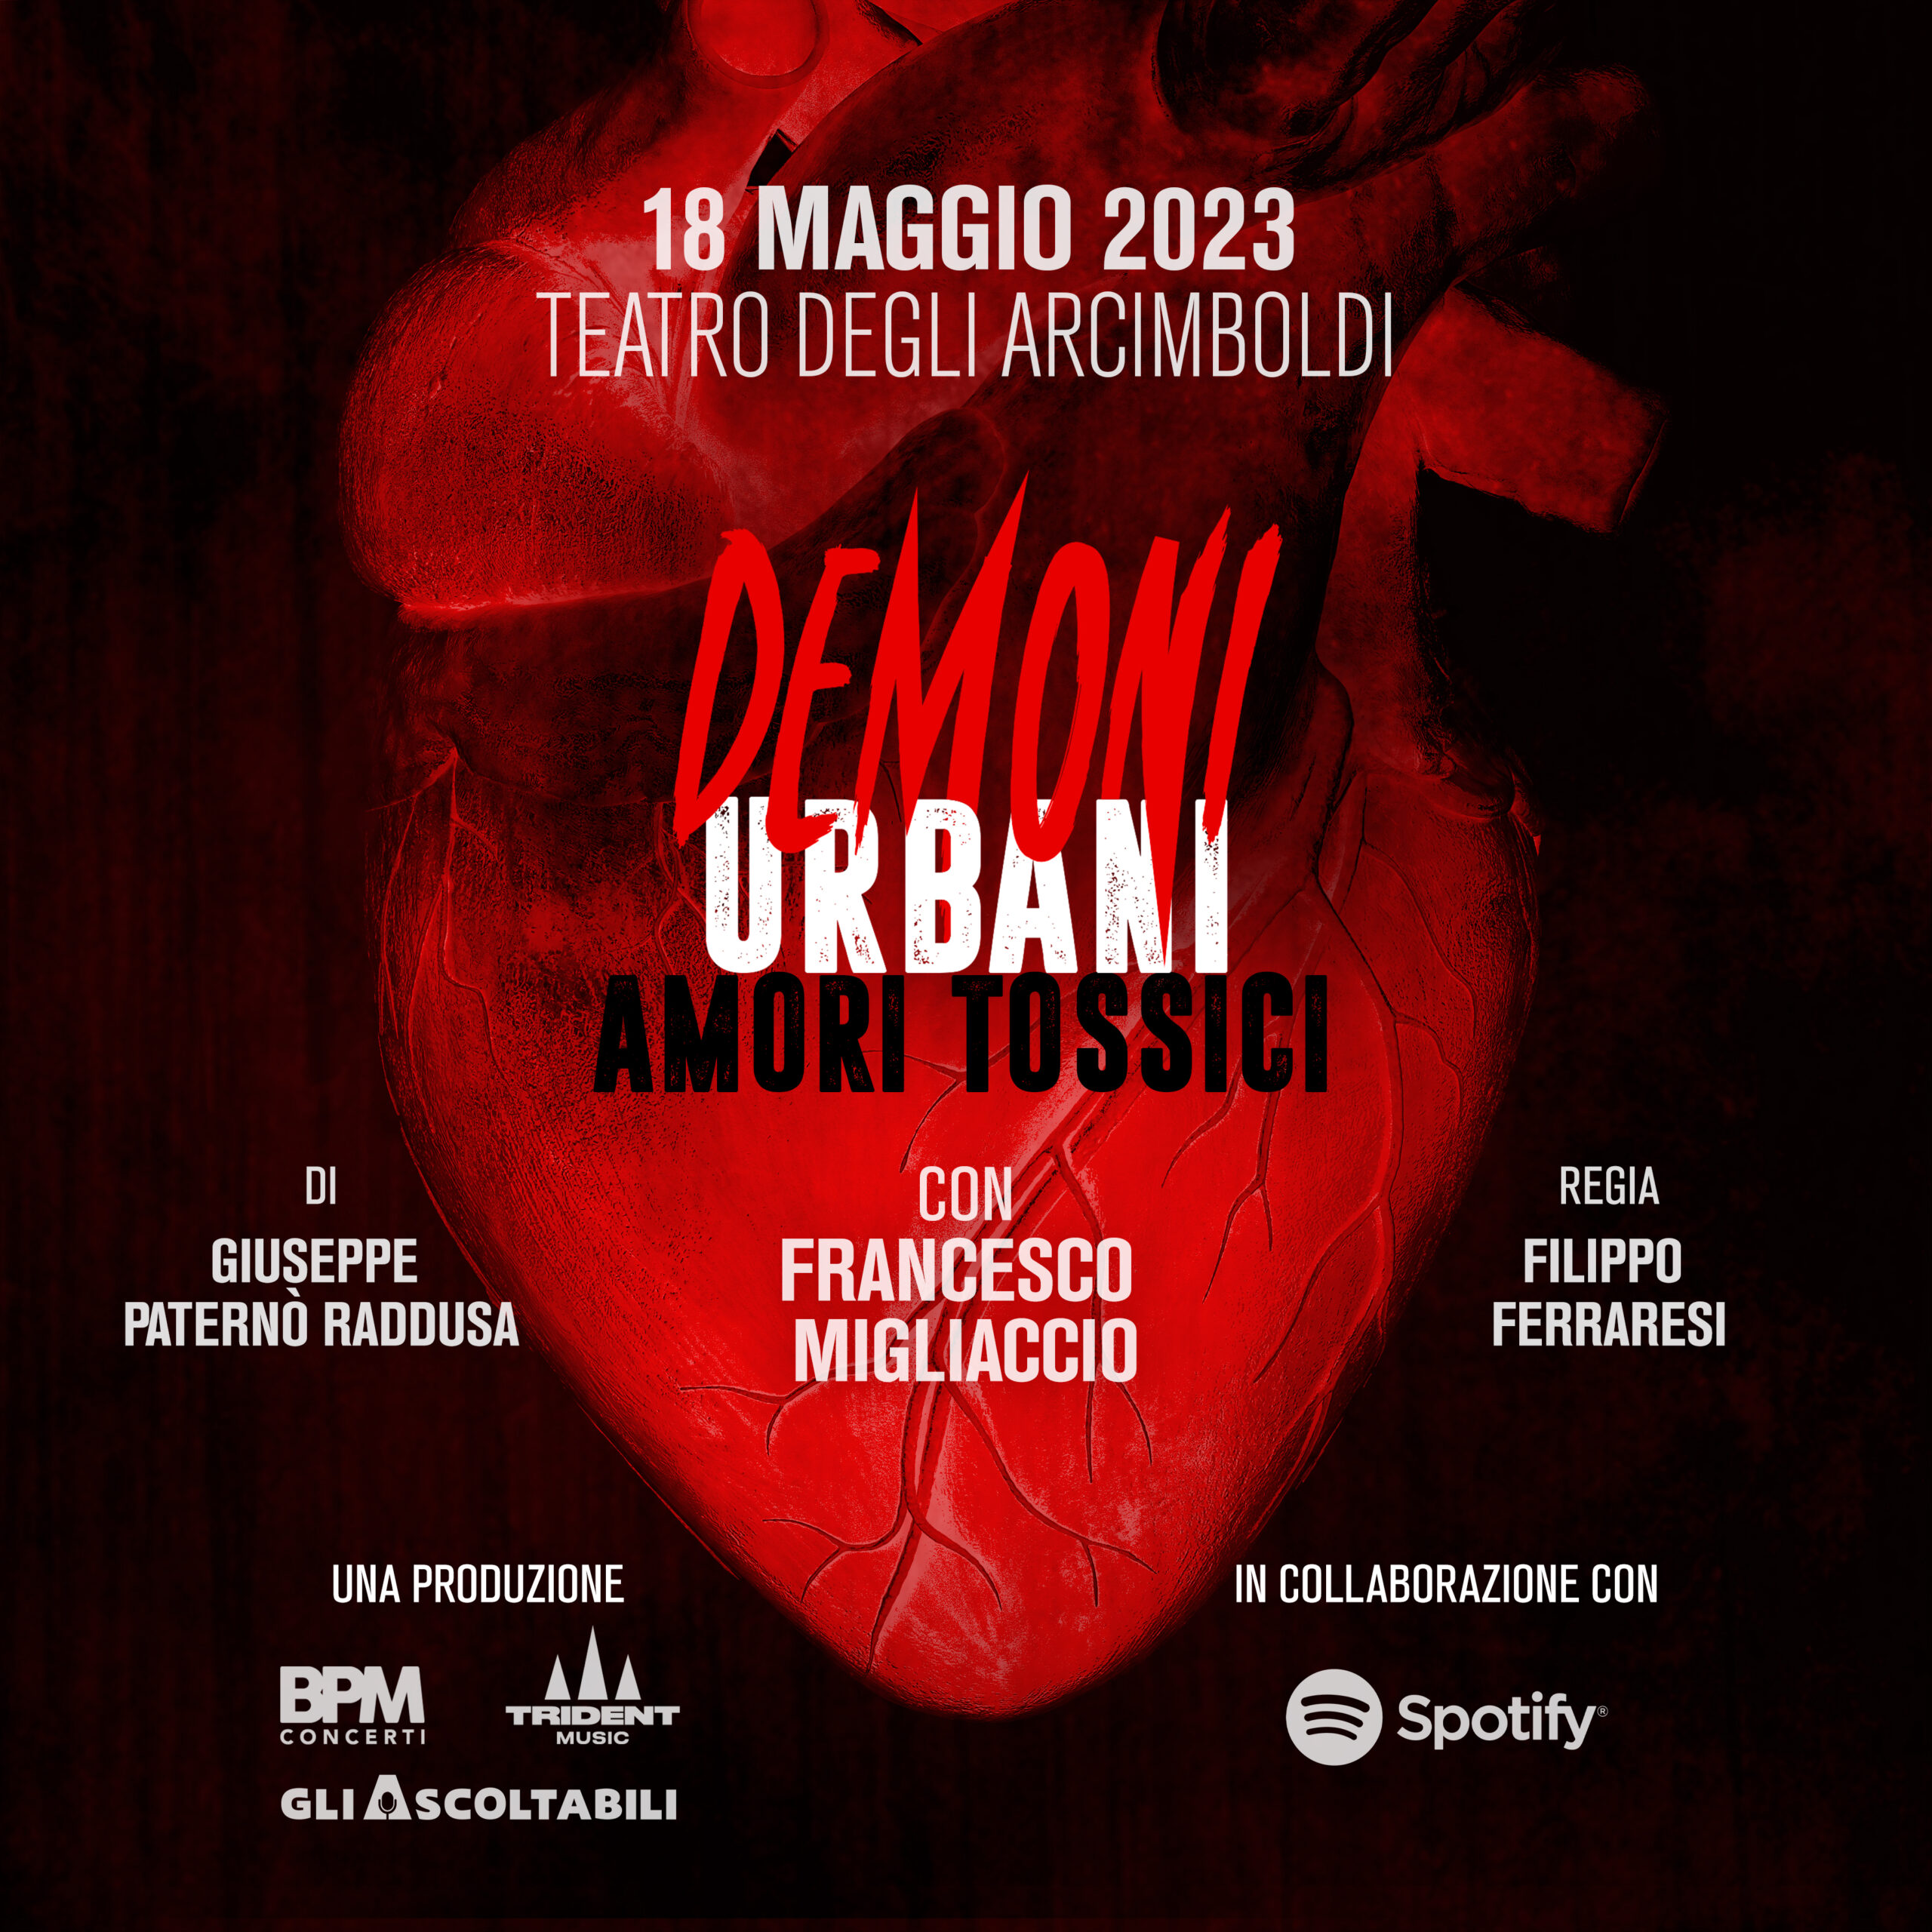 Demoni Urbani “Amori Tossici”, lo spettacolo tratto dal podcast nella top 5 Spotify tra i più ascoltati nel 2022 debutta a Milano il 18 maggio 2023